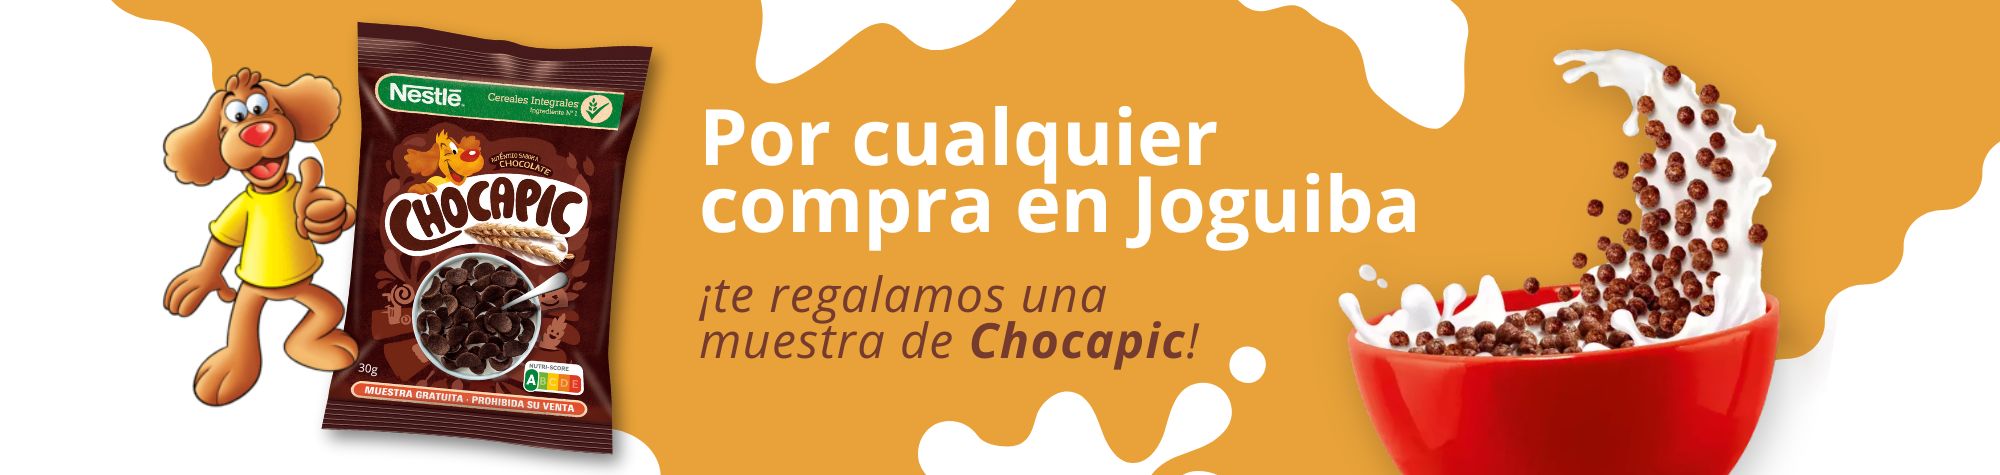 Promoción Chocapic